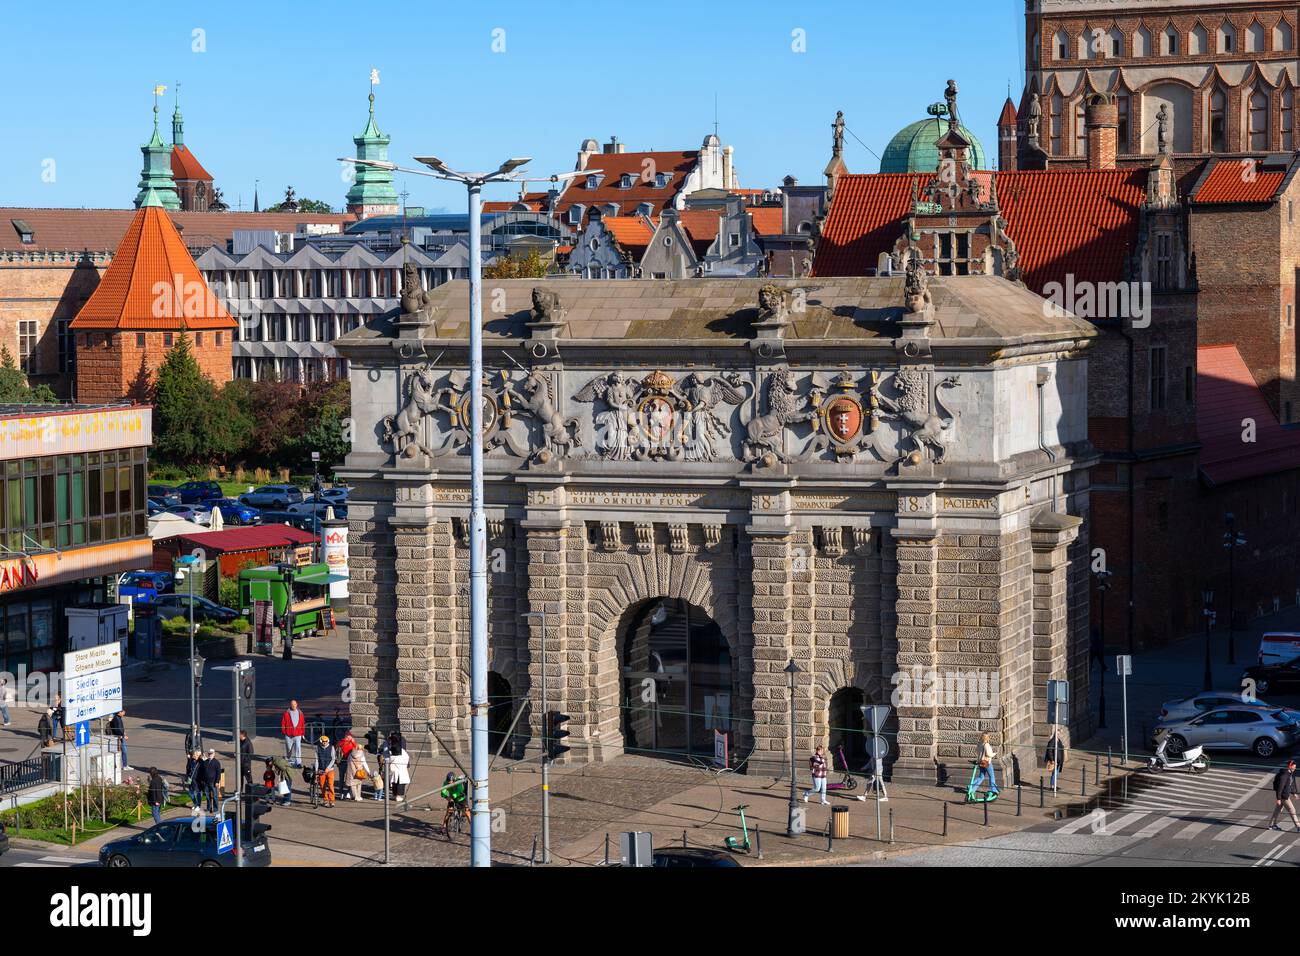 La Puerta de las Tierras Altas (Brama Wyżynna), también llamada Puerta Alta o Puerta de Upland en la ciudad de Gdańsk en Polonia. puerta de la ciudad del siglo 16th situado en la entrada Foto de stock